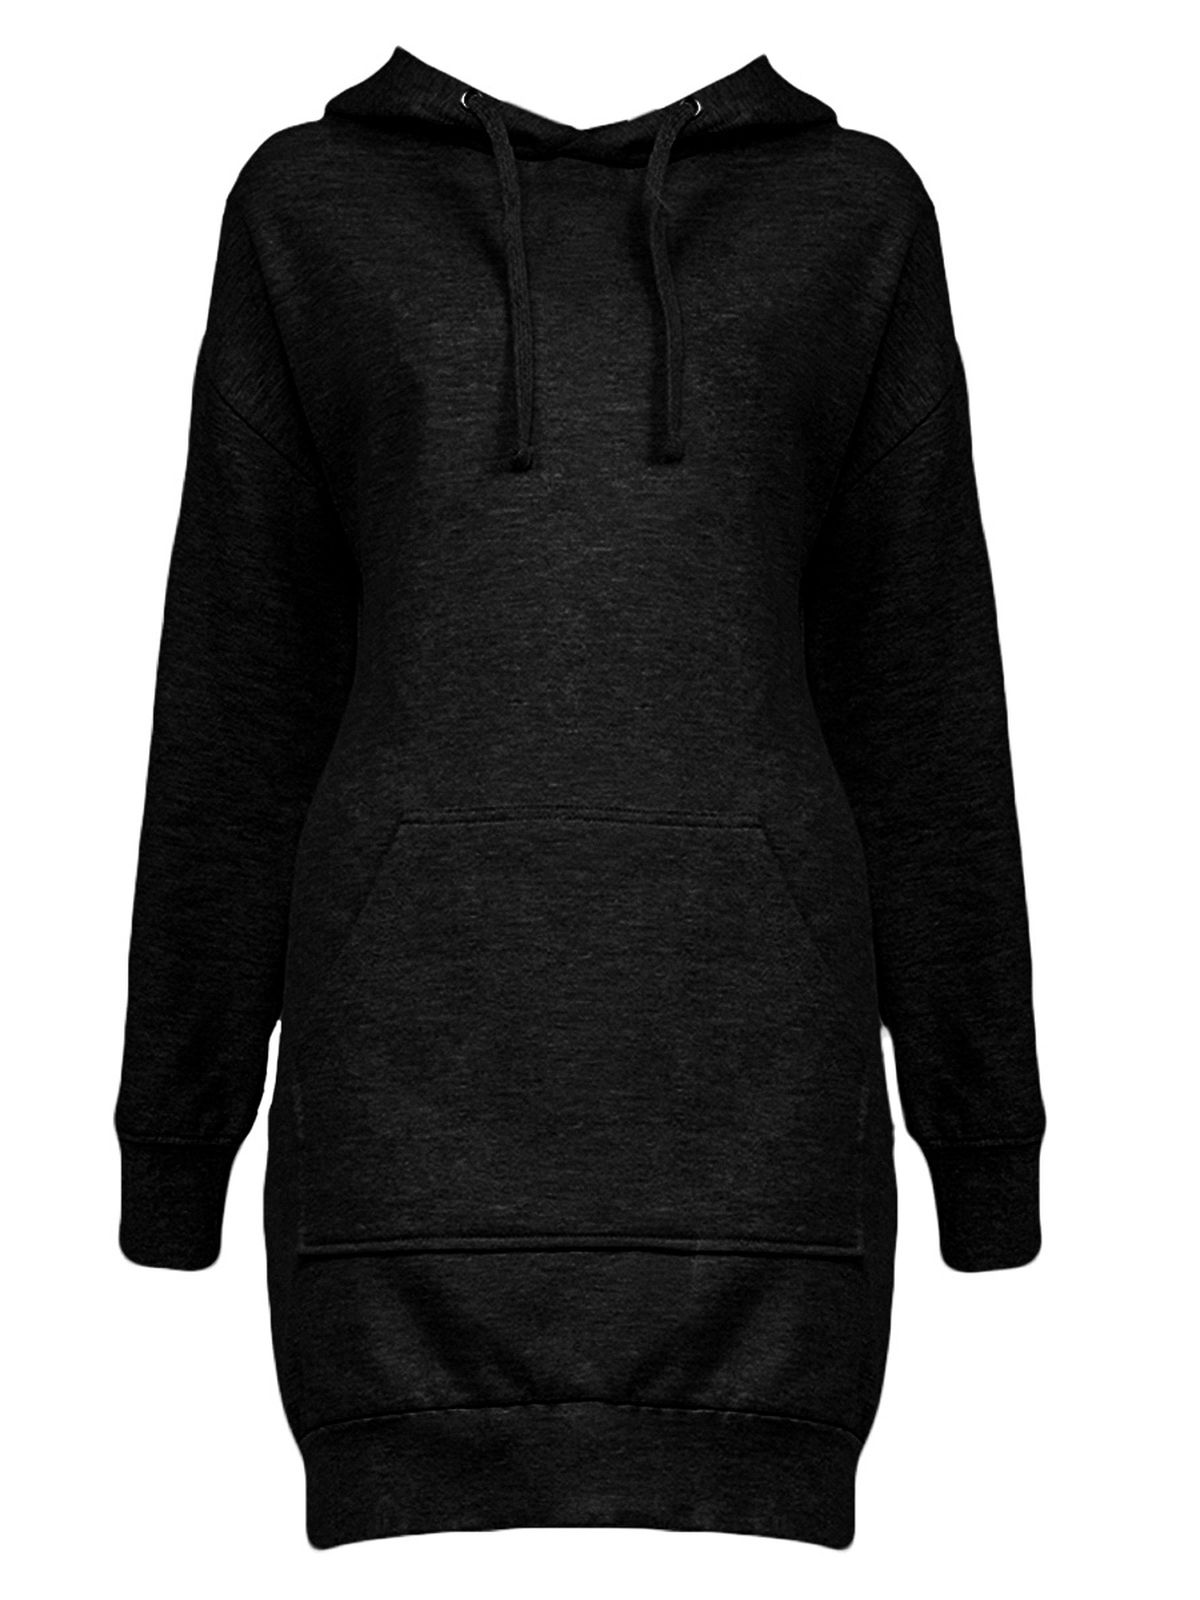 hoodie-dress-jet-black.webp